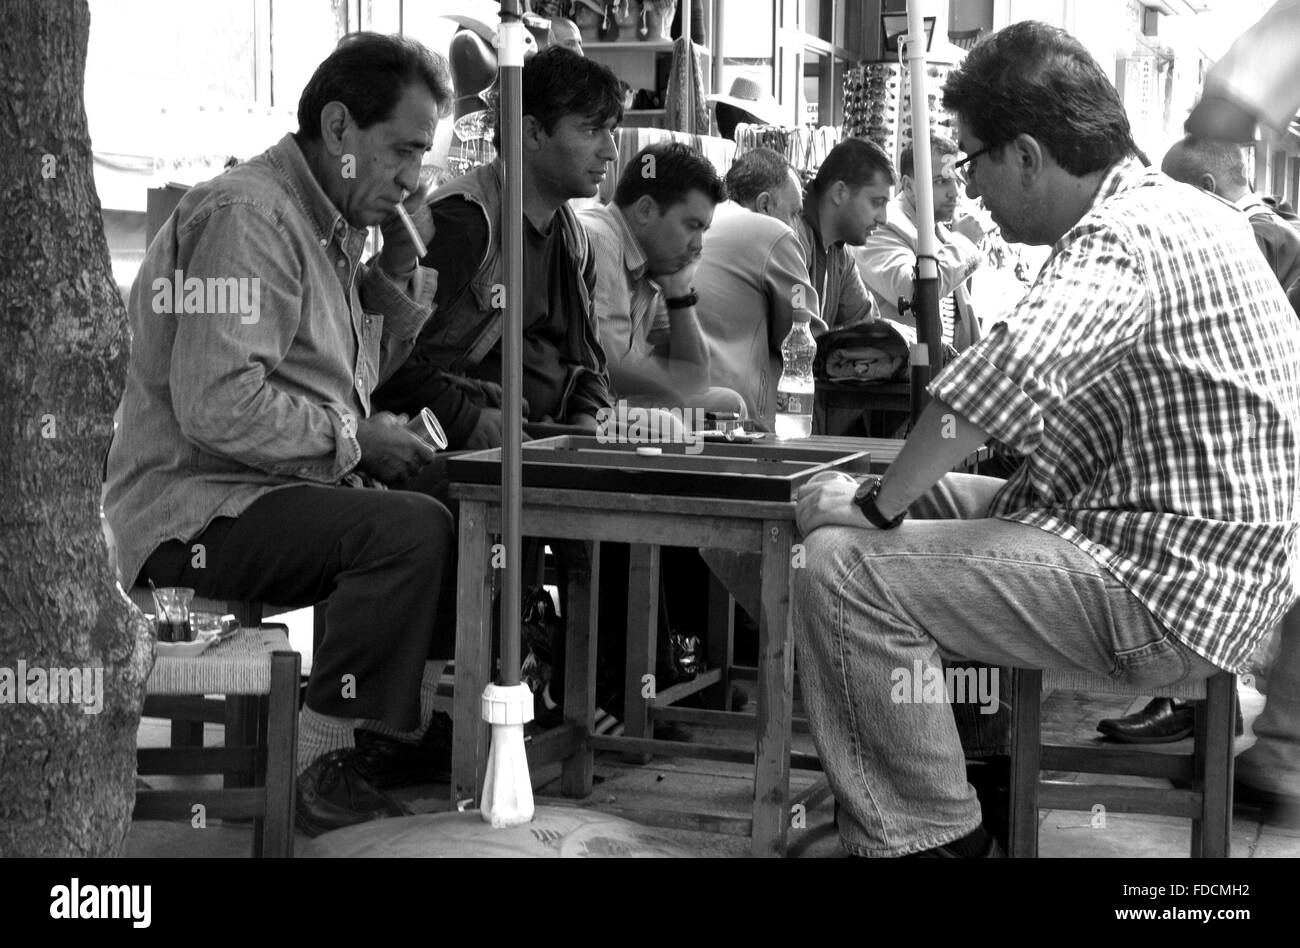 ISTANBUL - sett 8: Uomini non identificati giocare Baccarat o tavla gioco in strada al vecchio quartiere, Istanbul, Turchia a settembre 8, 2009 Foto Stock